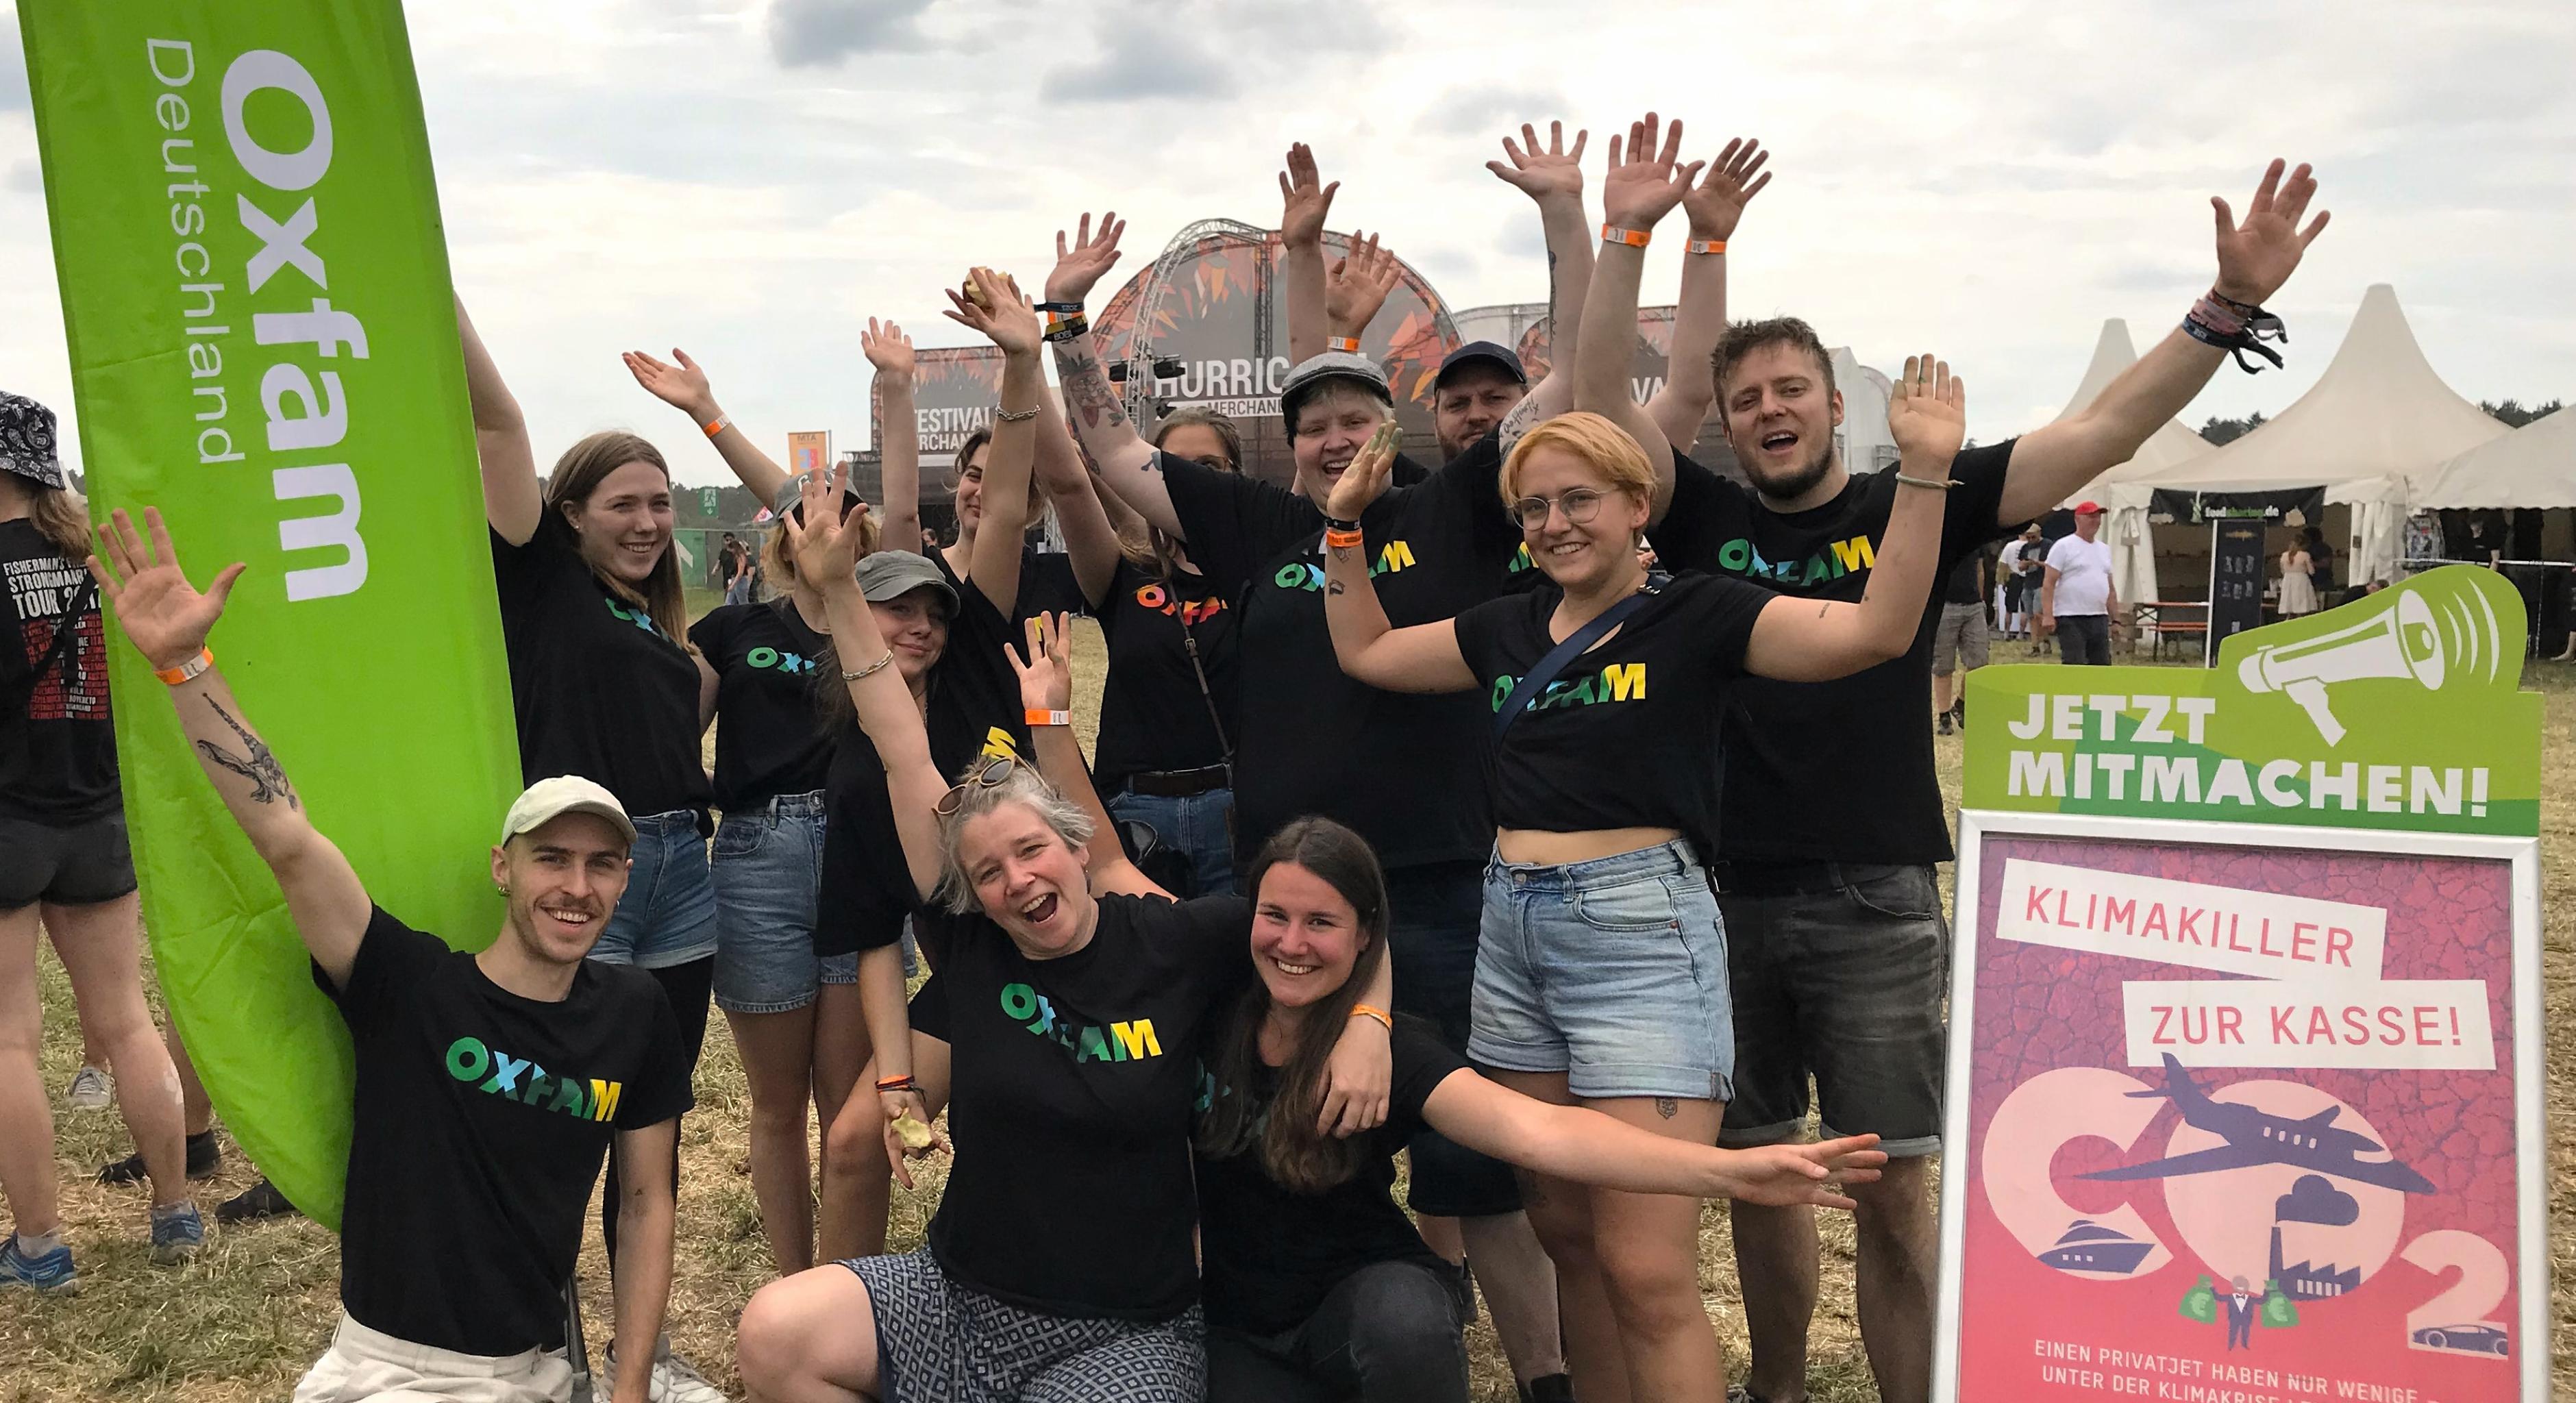 Gruppenfoto von Aktivist*innen in Oxfam-Shirts, sie strecken die Arme in die Luft und lächeln. Neben ihnen befinden sich ein grüner Oxfam-Banner und ein Info-Schild zur aktuellen Kampagne. Im Hintergrund ist das Hurricane-Festivalgelände zu sehen.